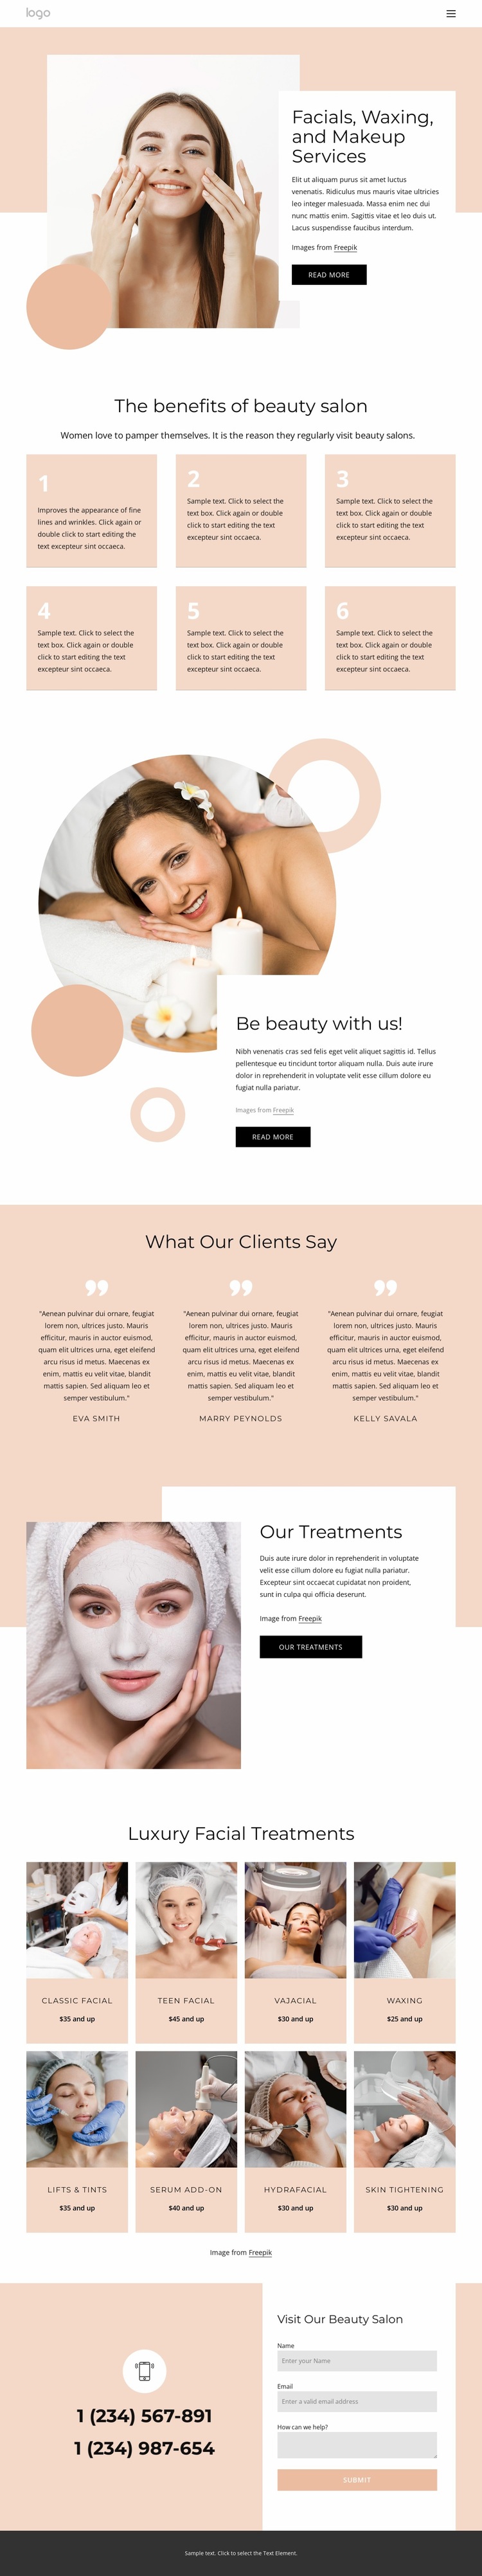 Facials, waxing, makeup services Website Design